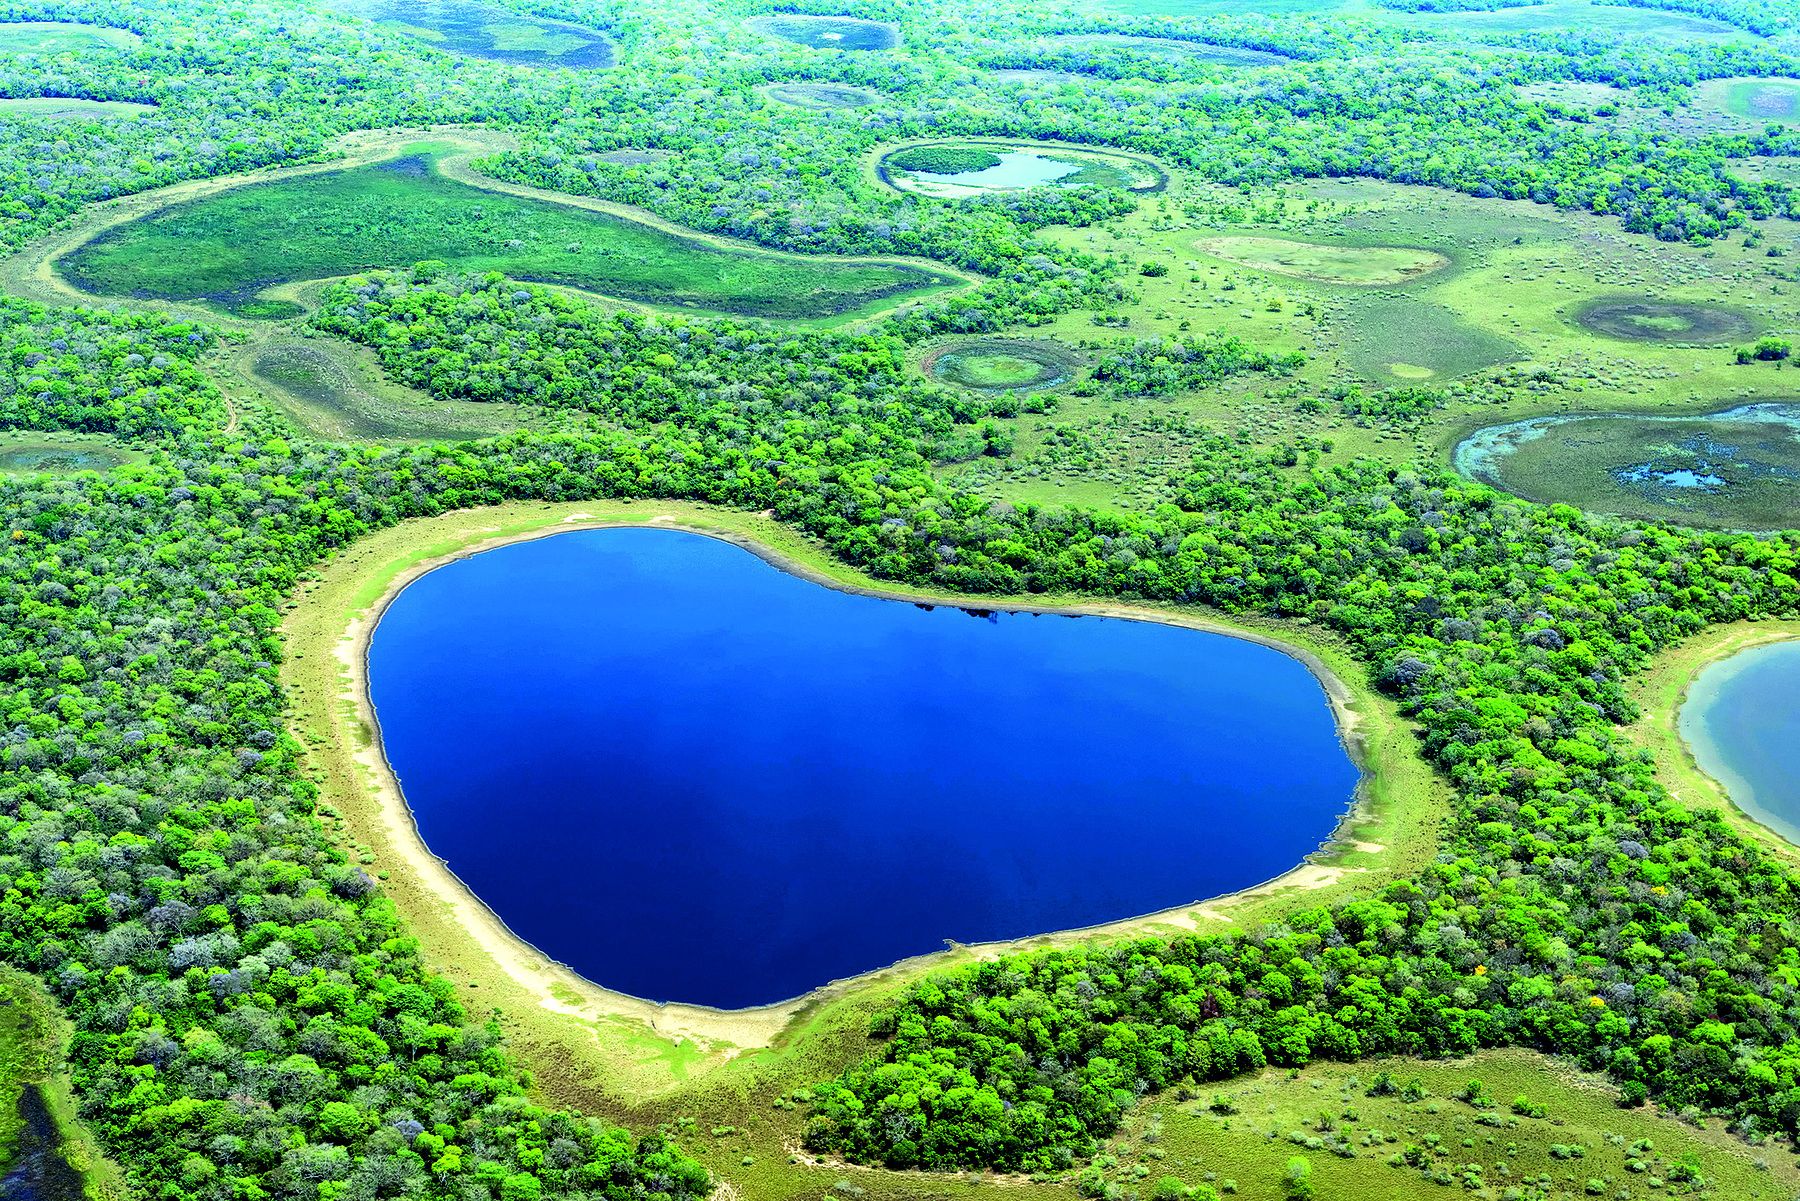 Fotografia. Vista aérea de uma área plana, com uma lagoa de águas escuras ao centro. Ao redor, vegetação verde, densa, e outros pontos alagados.